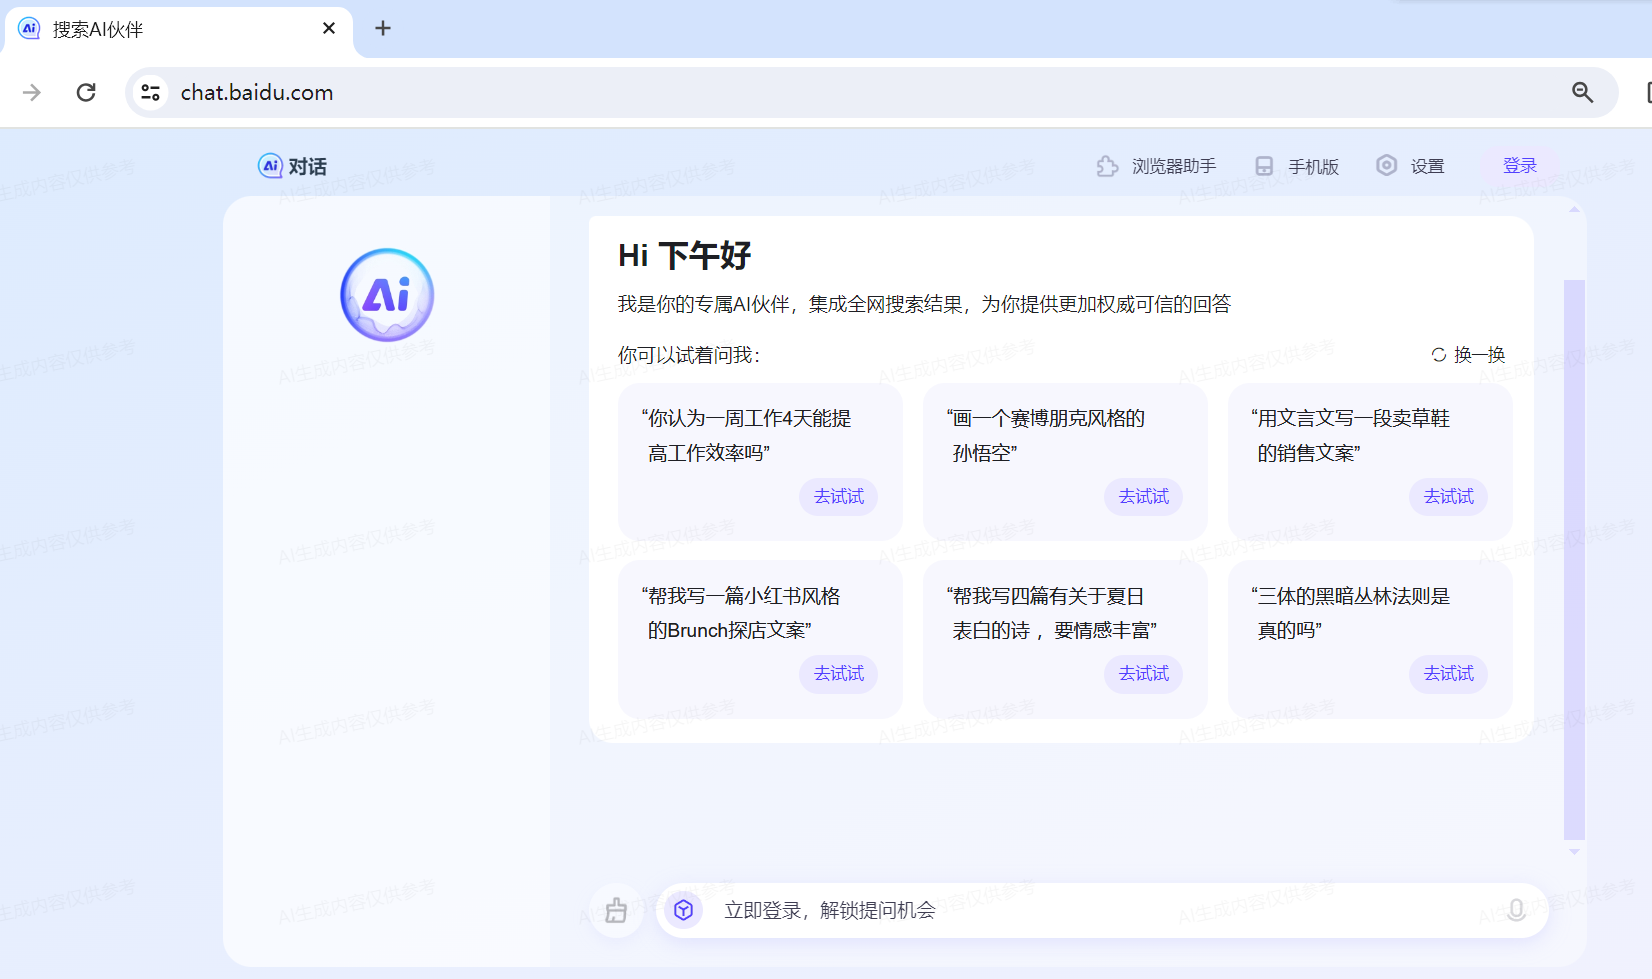 Baidu AI Search Partners